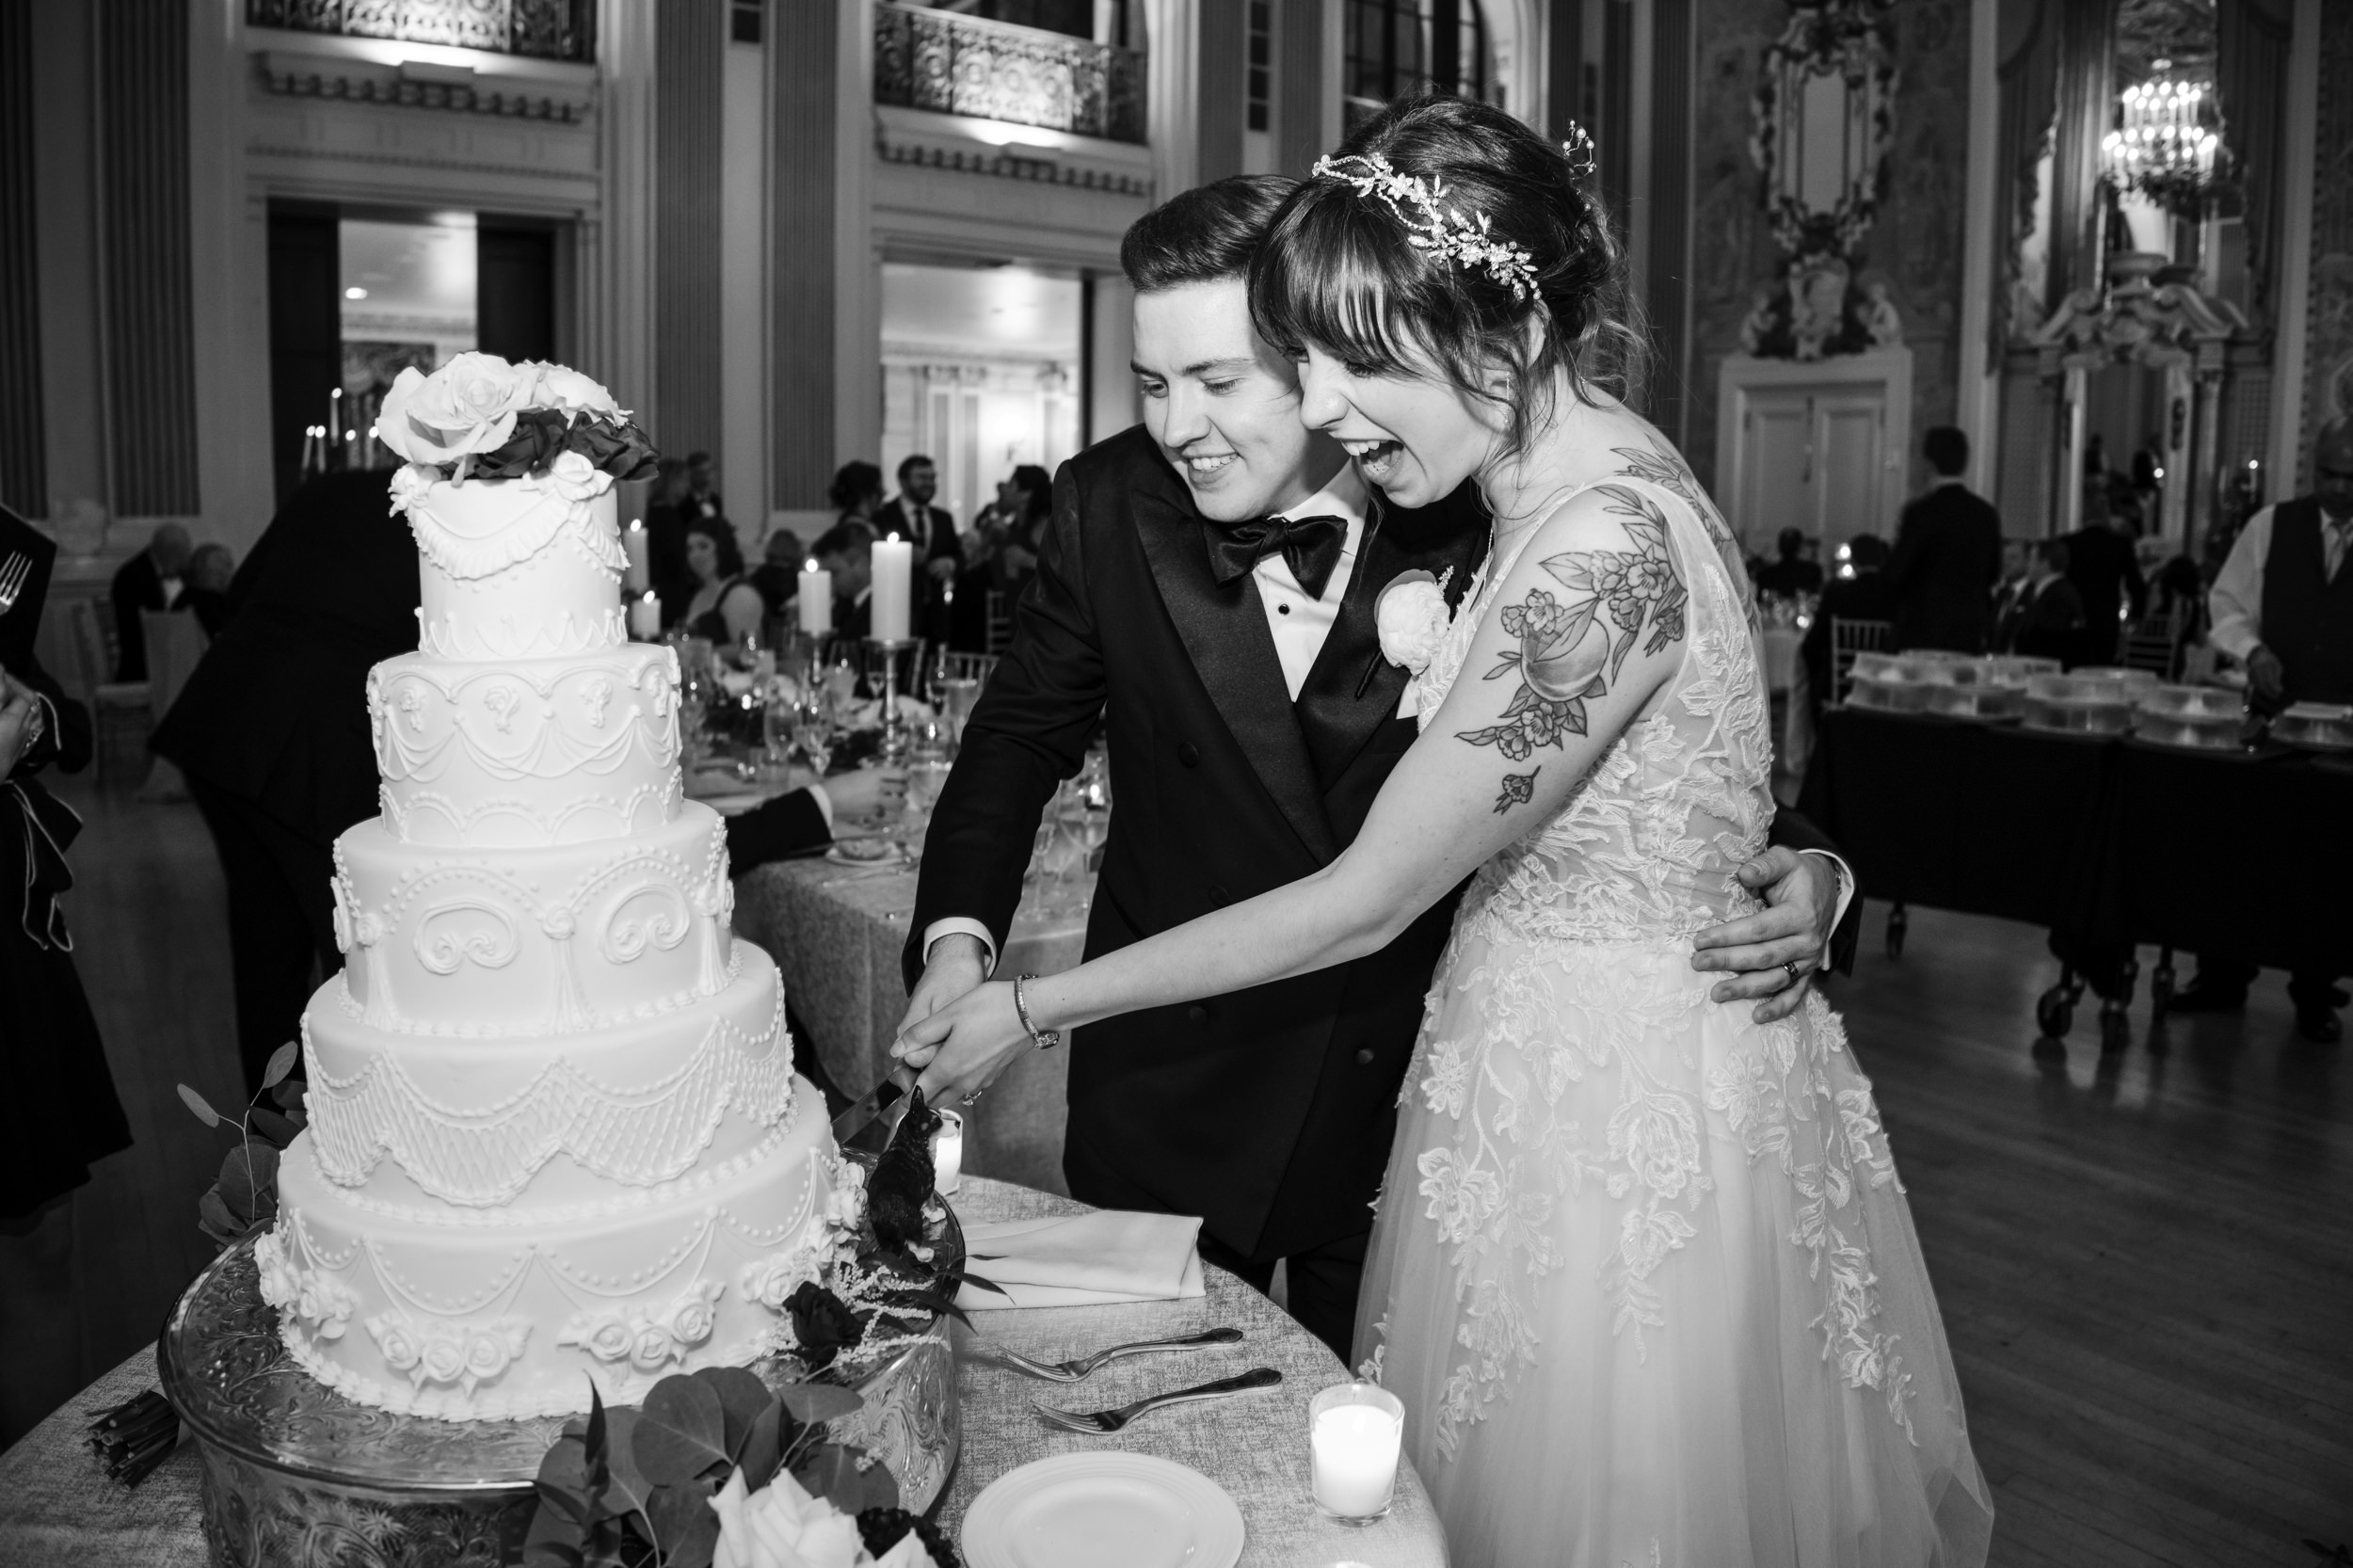 hotel dupont wedding cake cutting